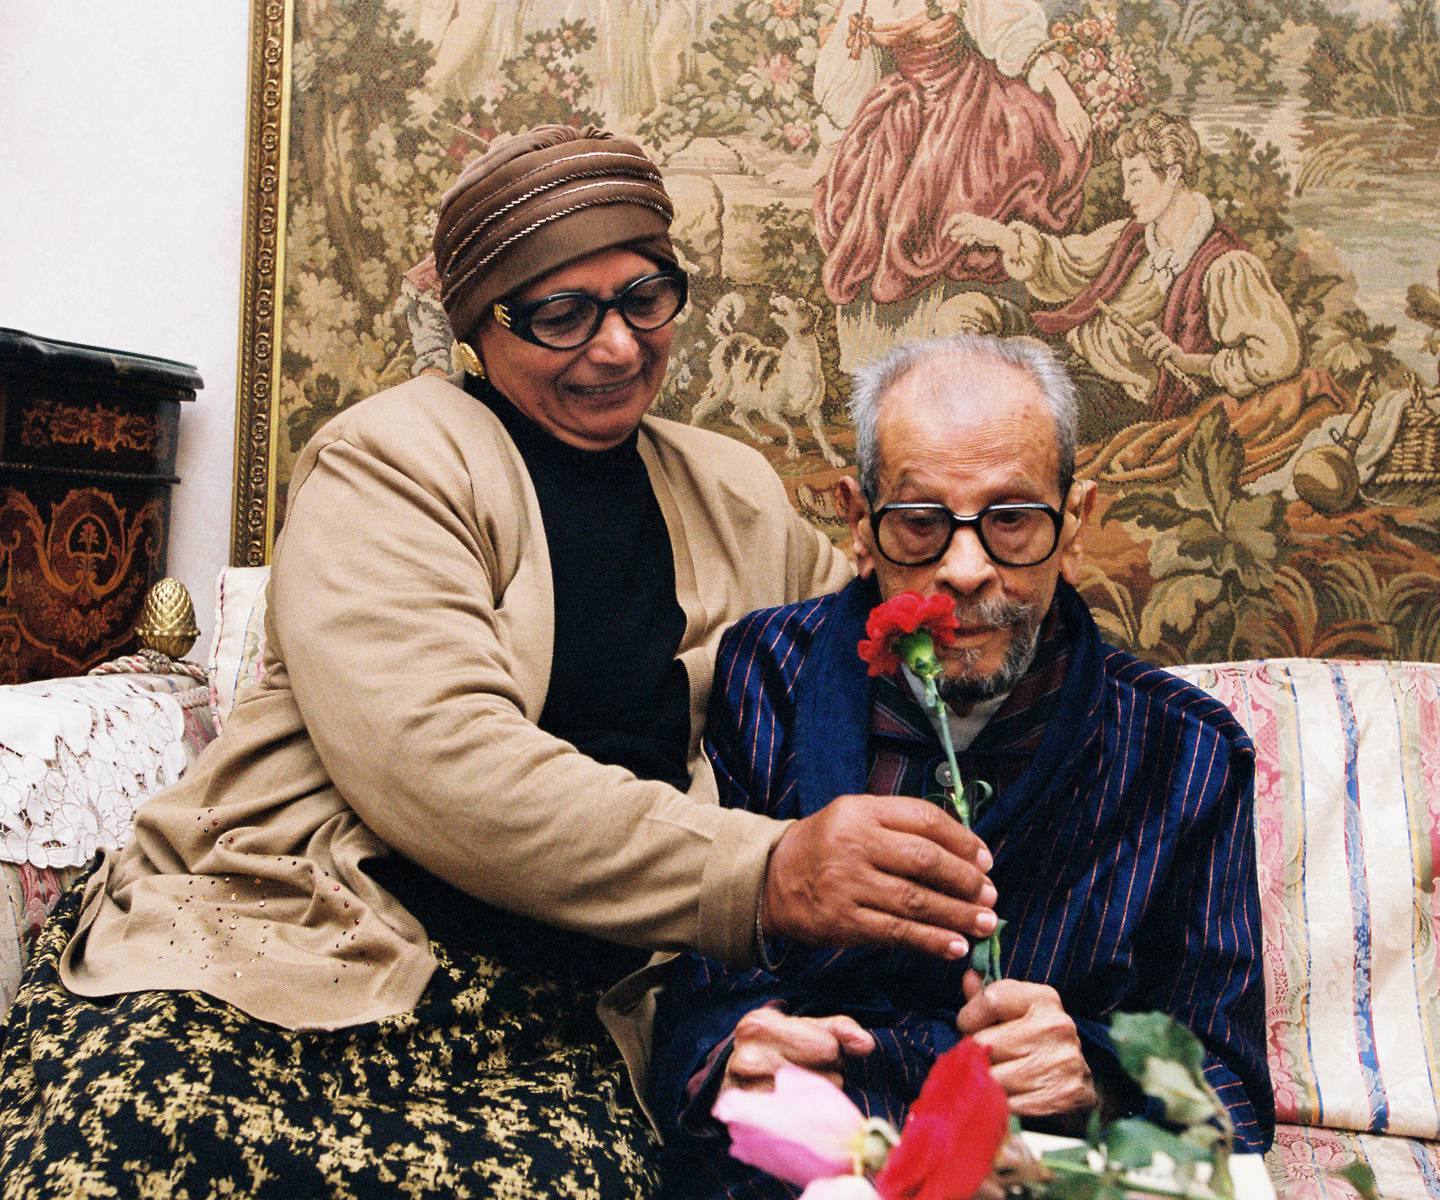 La moglie di Naguib Mahfouz, Attiyat, gli regala un garofano per il suo compleanno, il 10 dicembre 2001. Per gentile concessione di Mohamed Hegazy